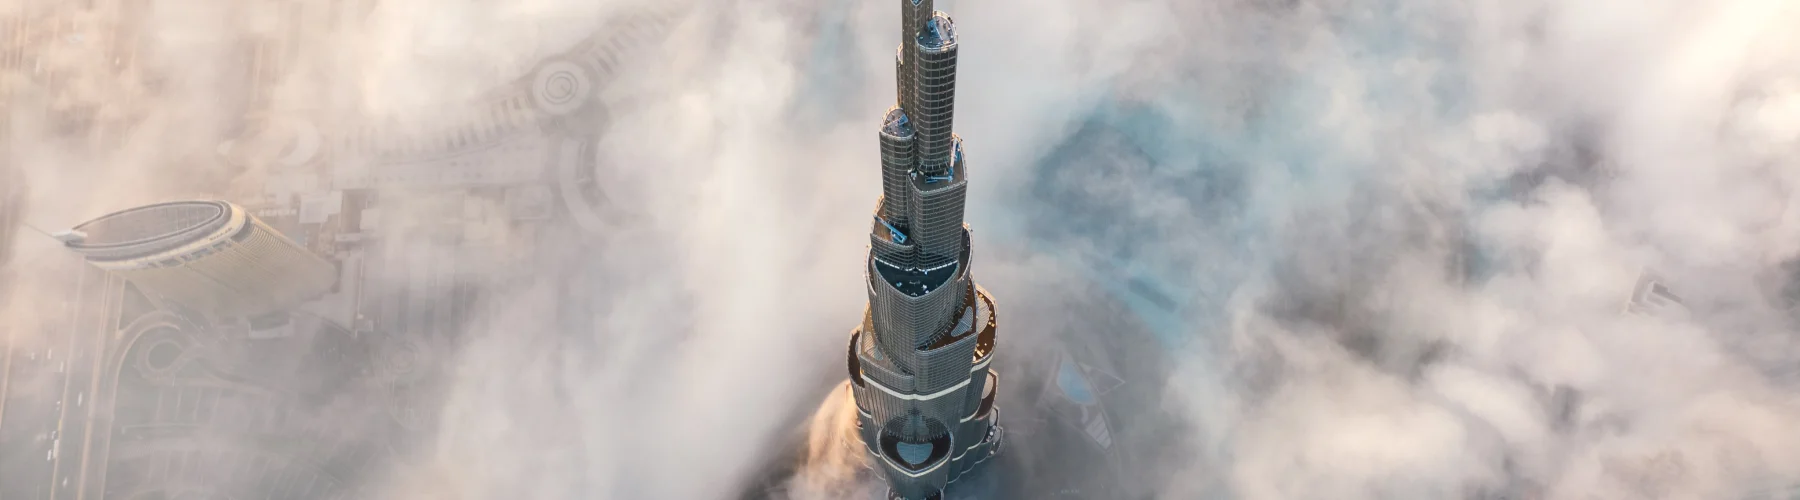 burj khalifa в ОАЭ